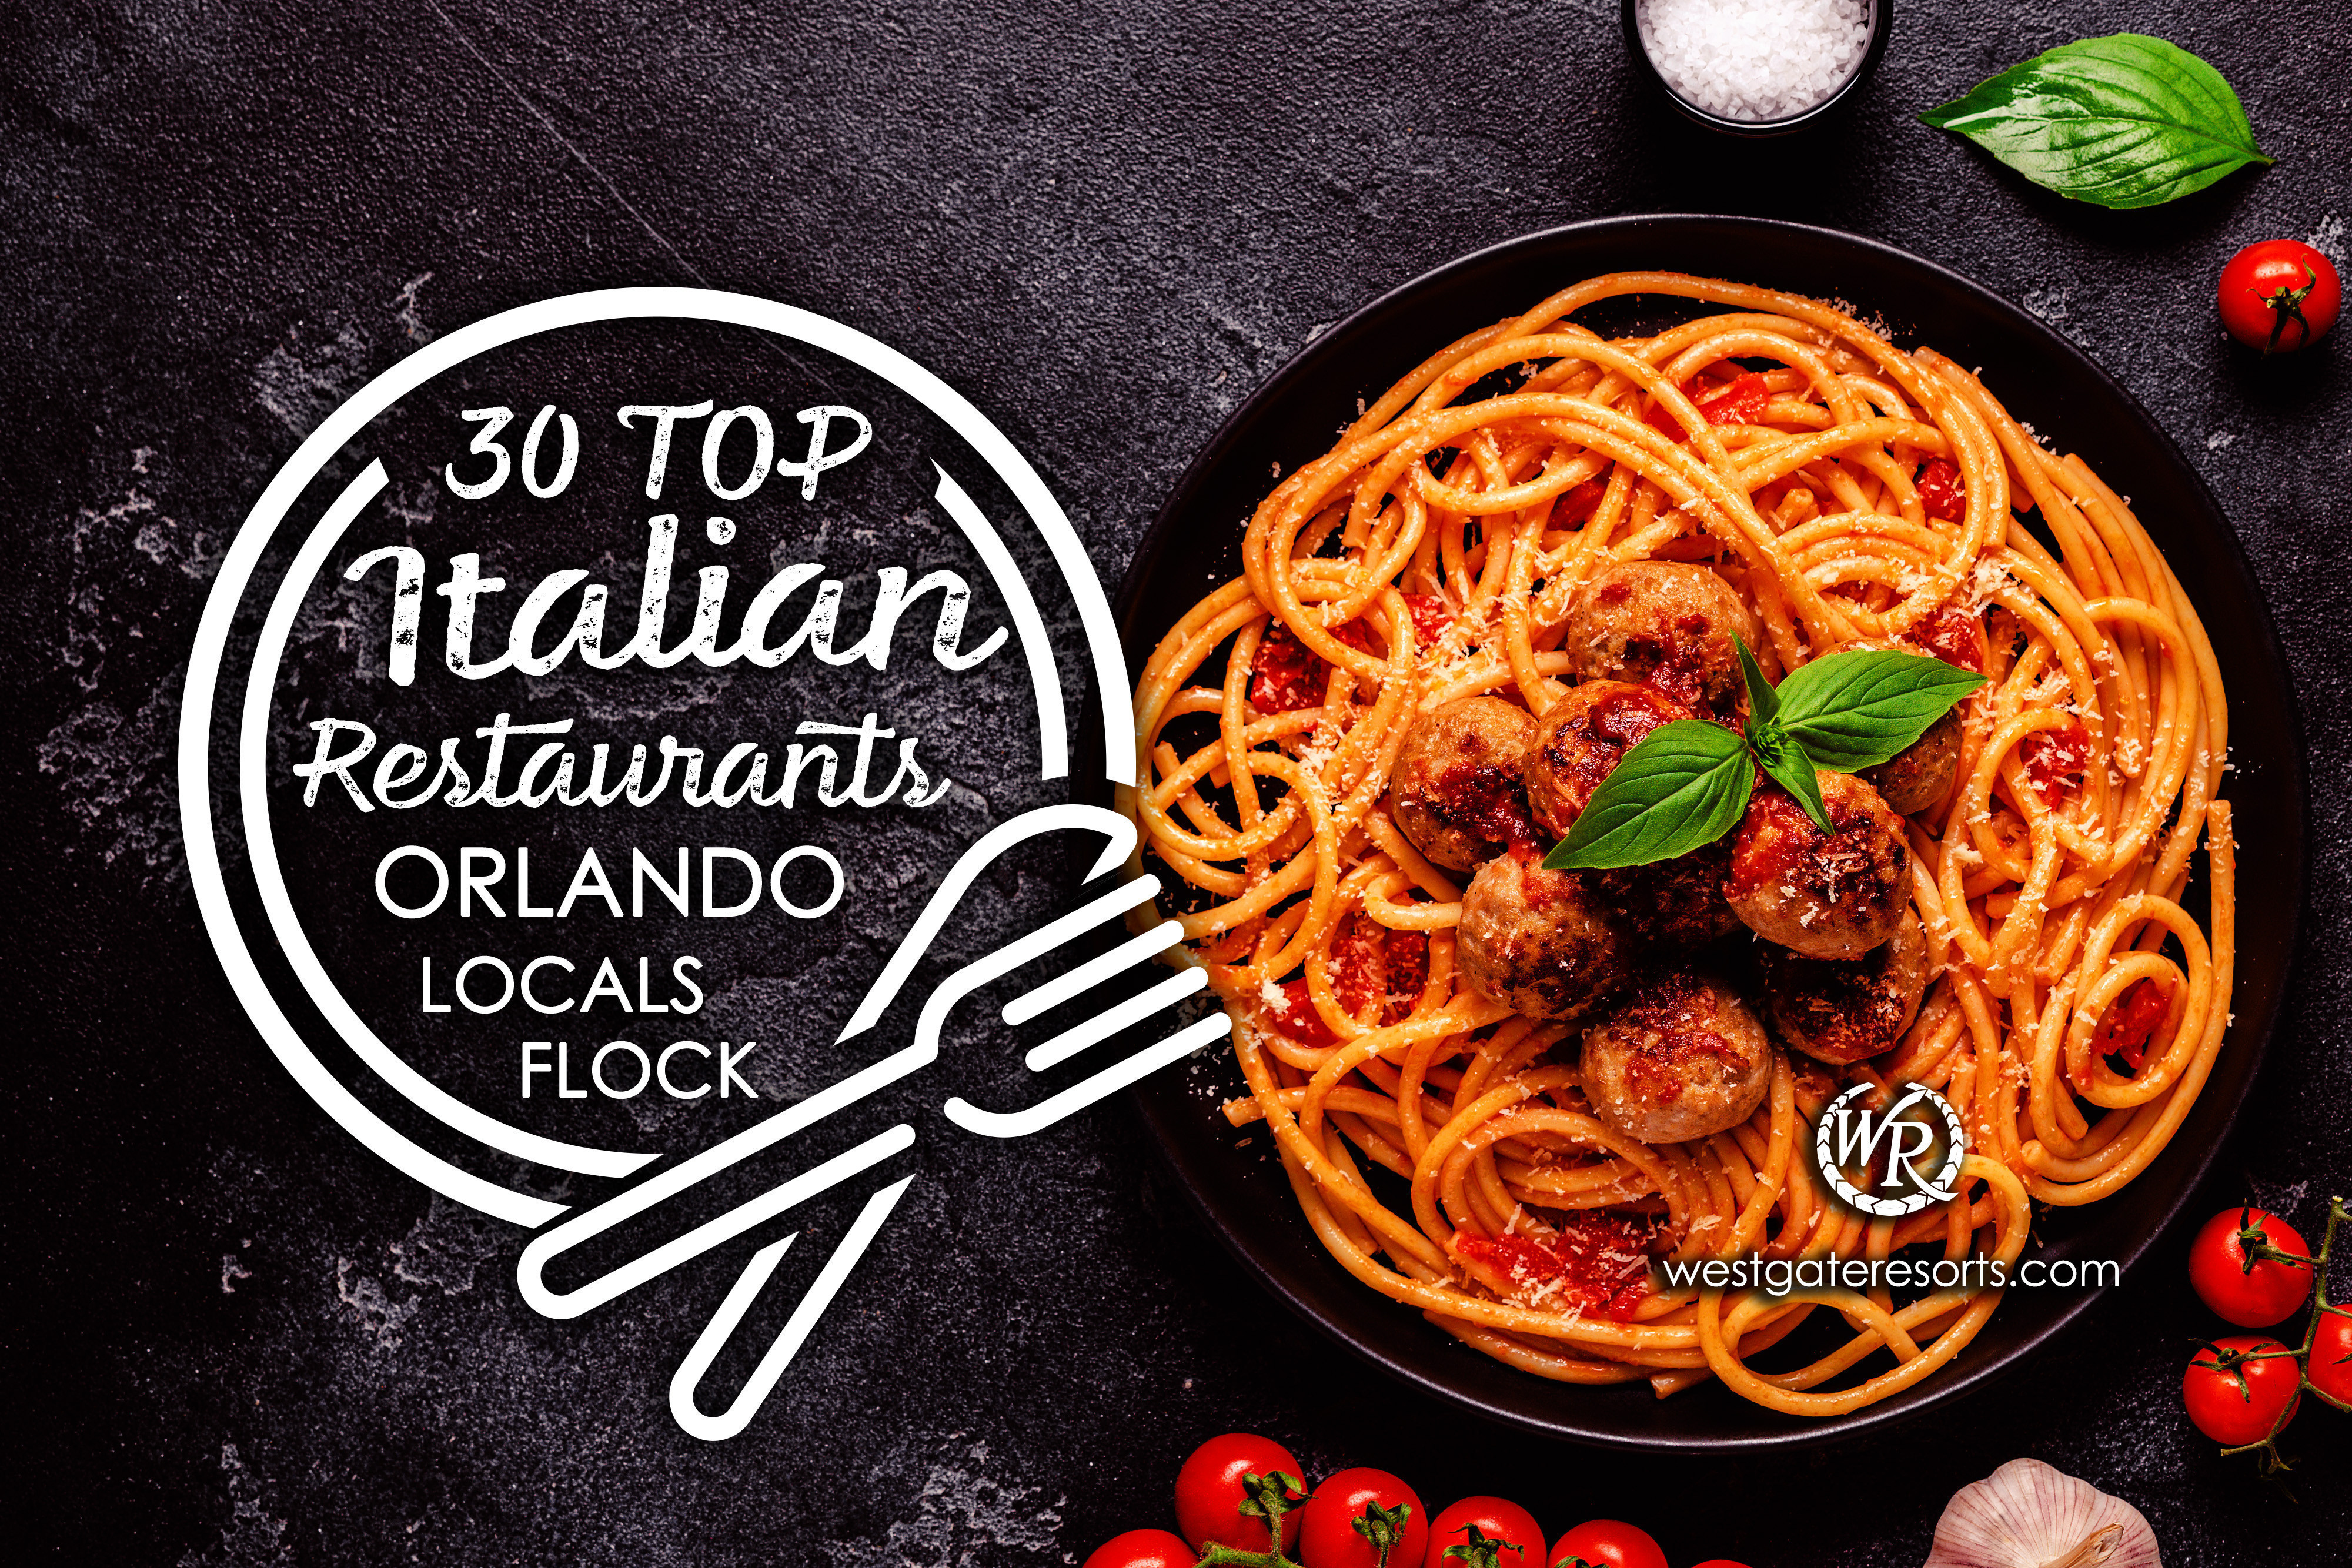 Los 30 mejores restaurantes italianos Locales de Orlando Flock